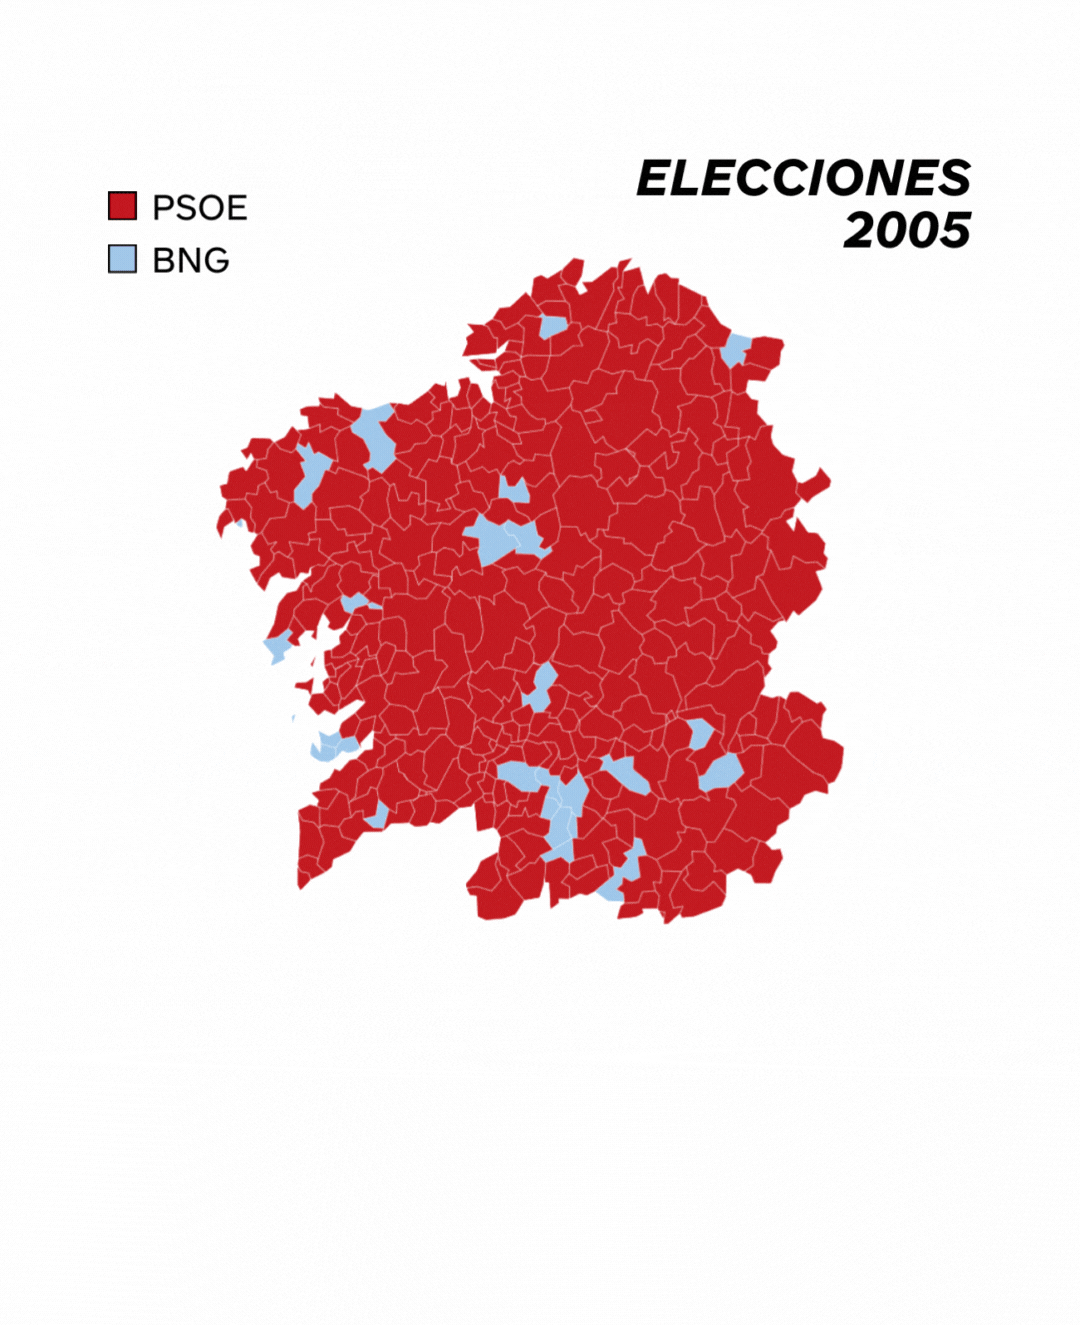 La evolución de la izquierda en las elecciones gallegas